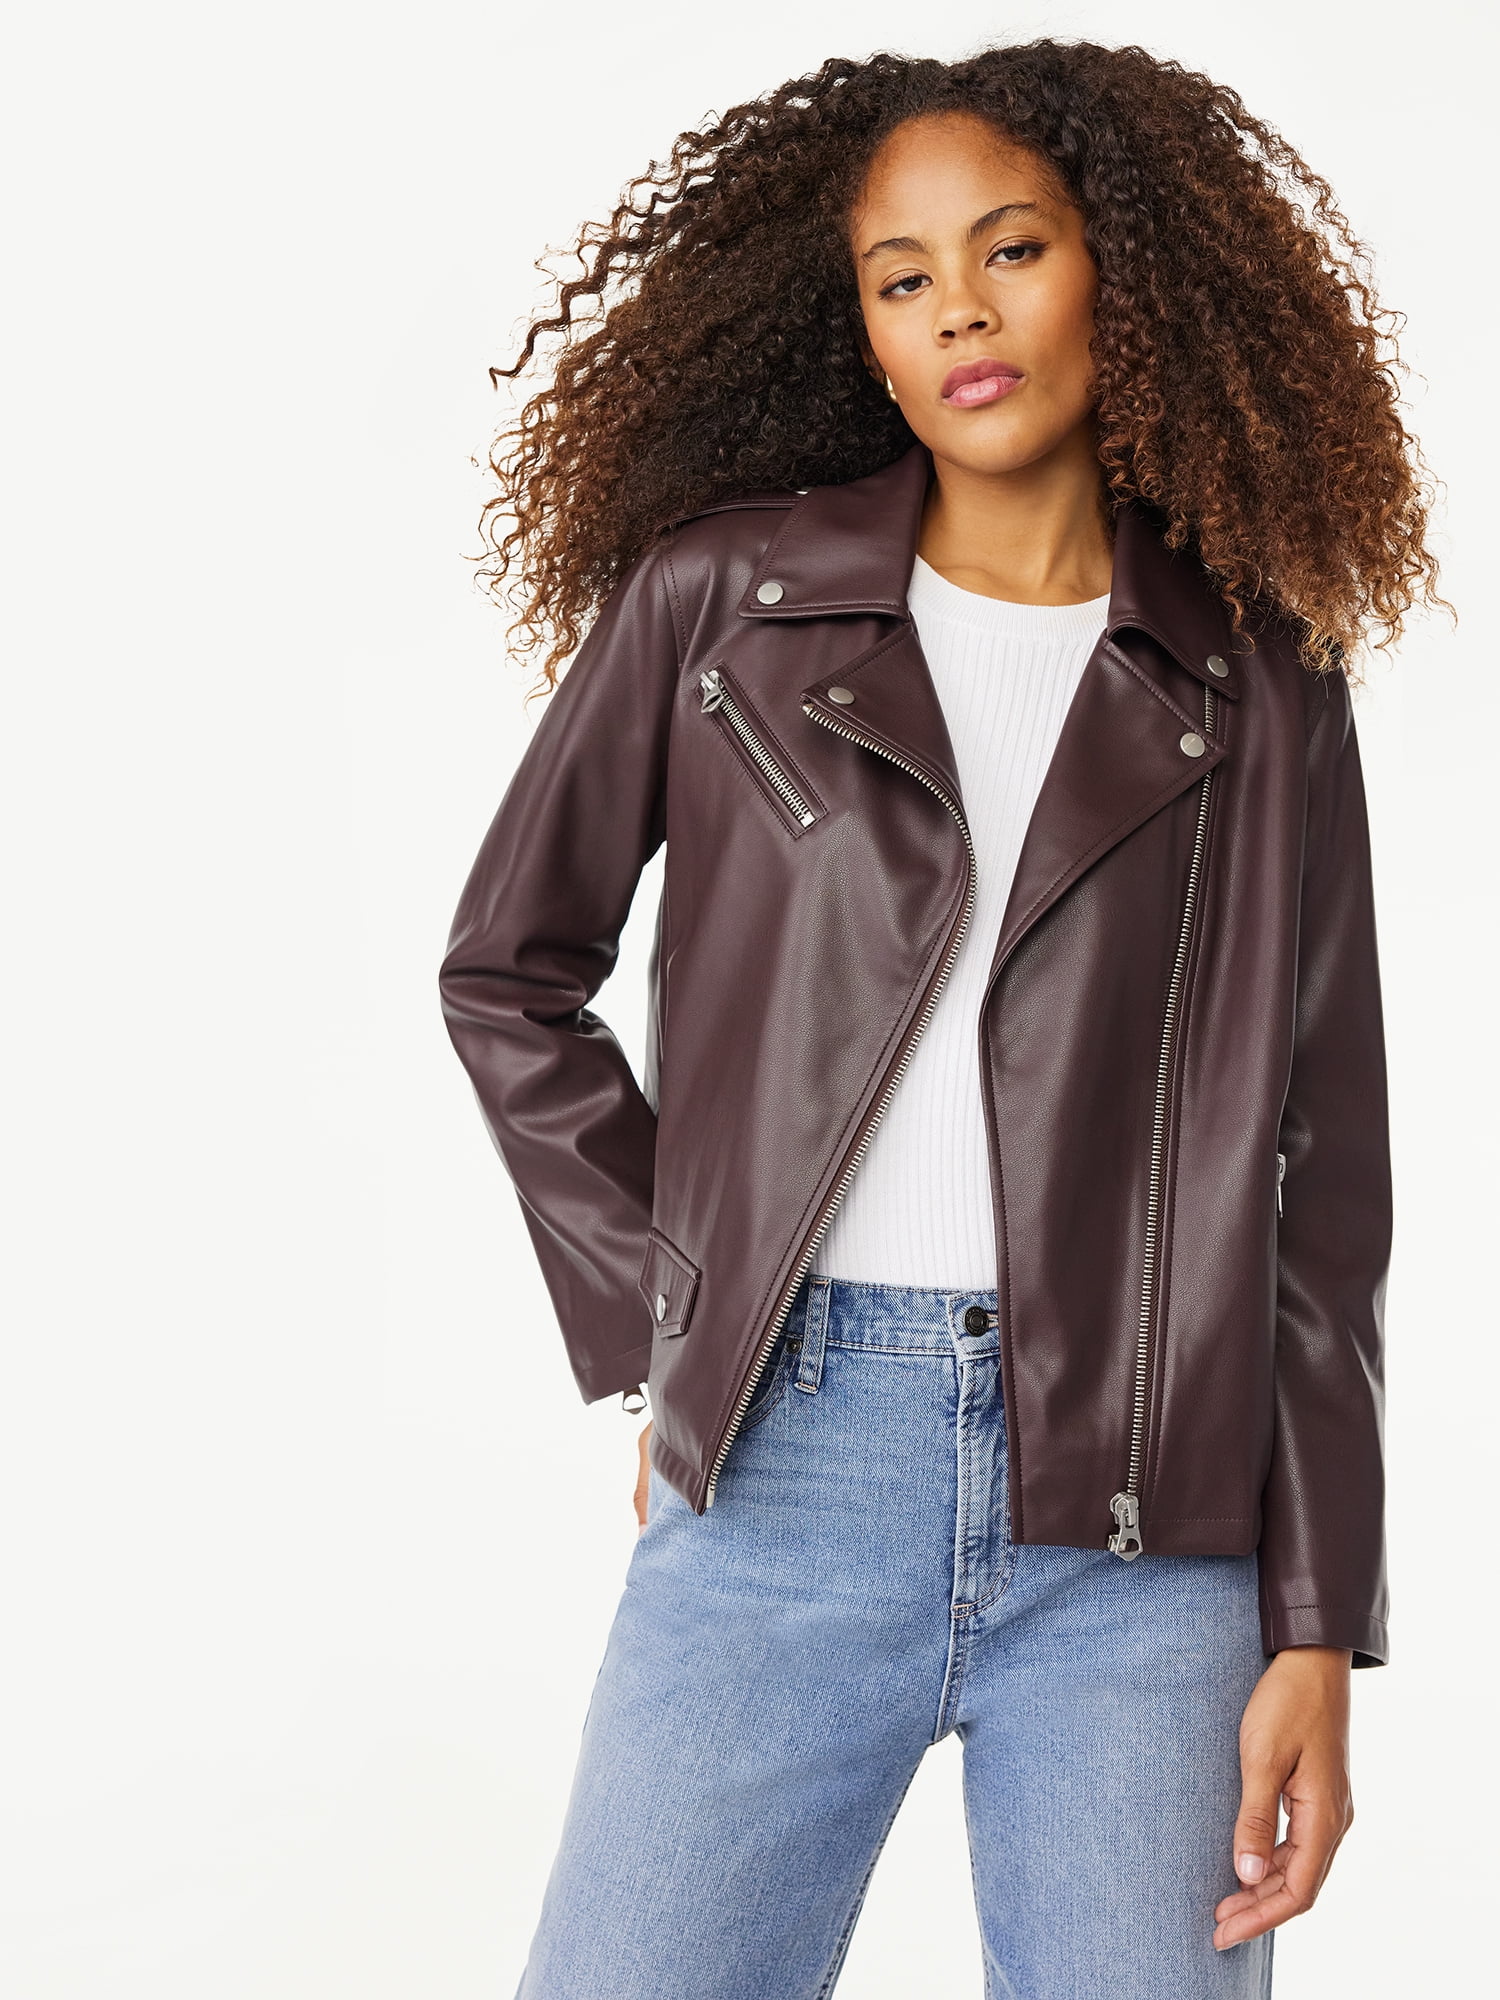 Scoop Women's Faux Leather Moto Jacket - Walmart.com